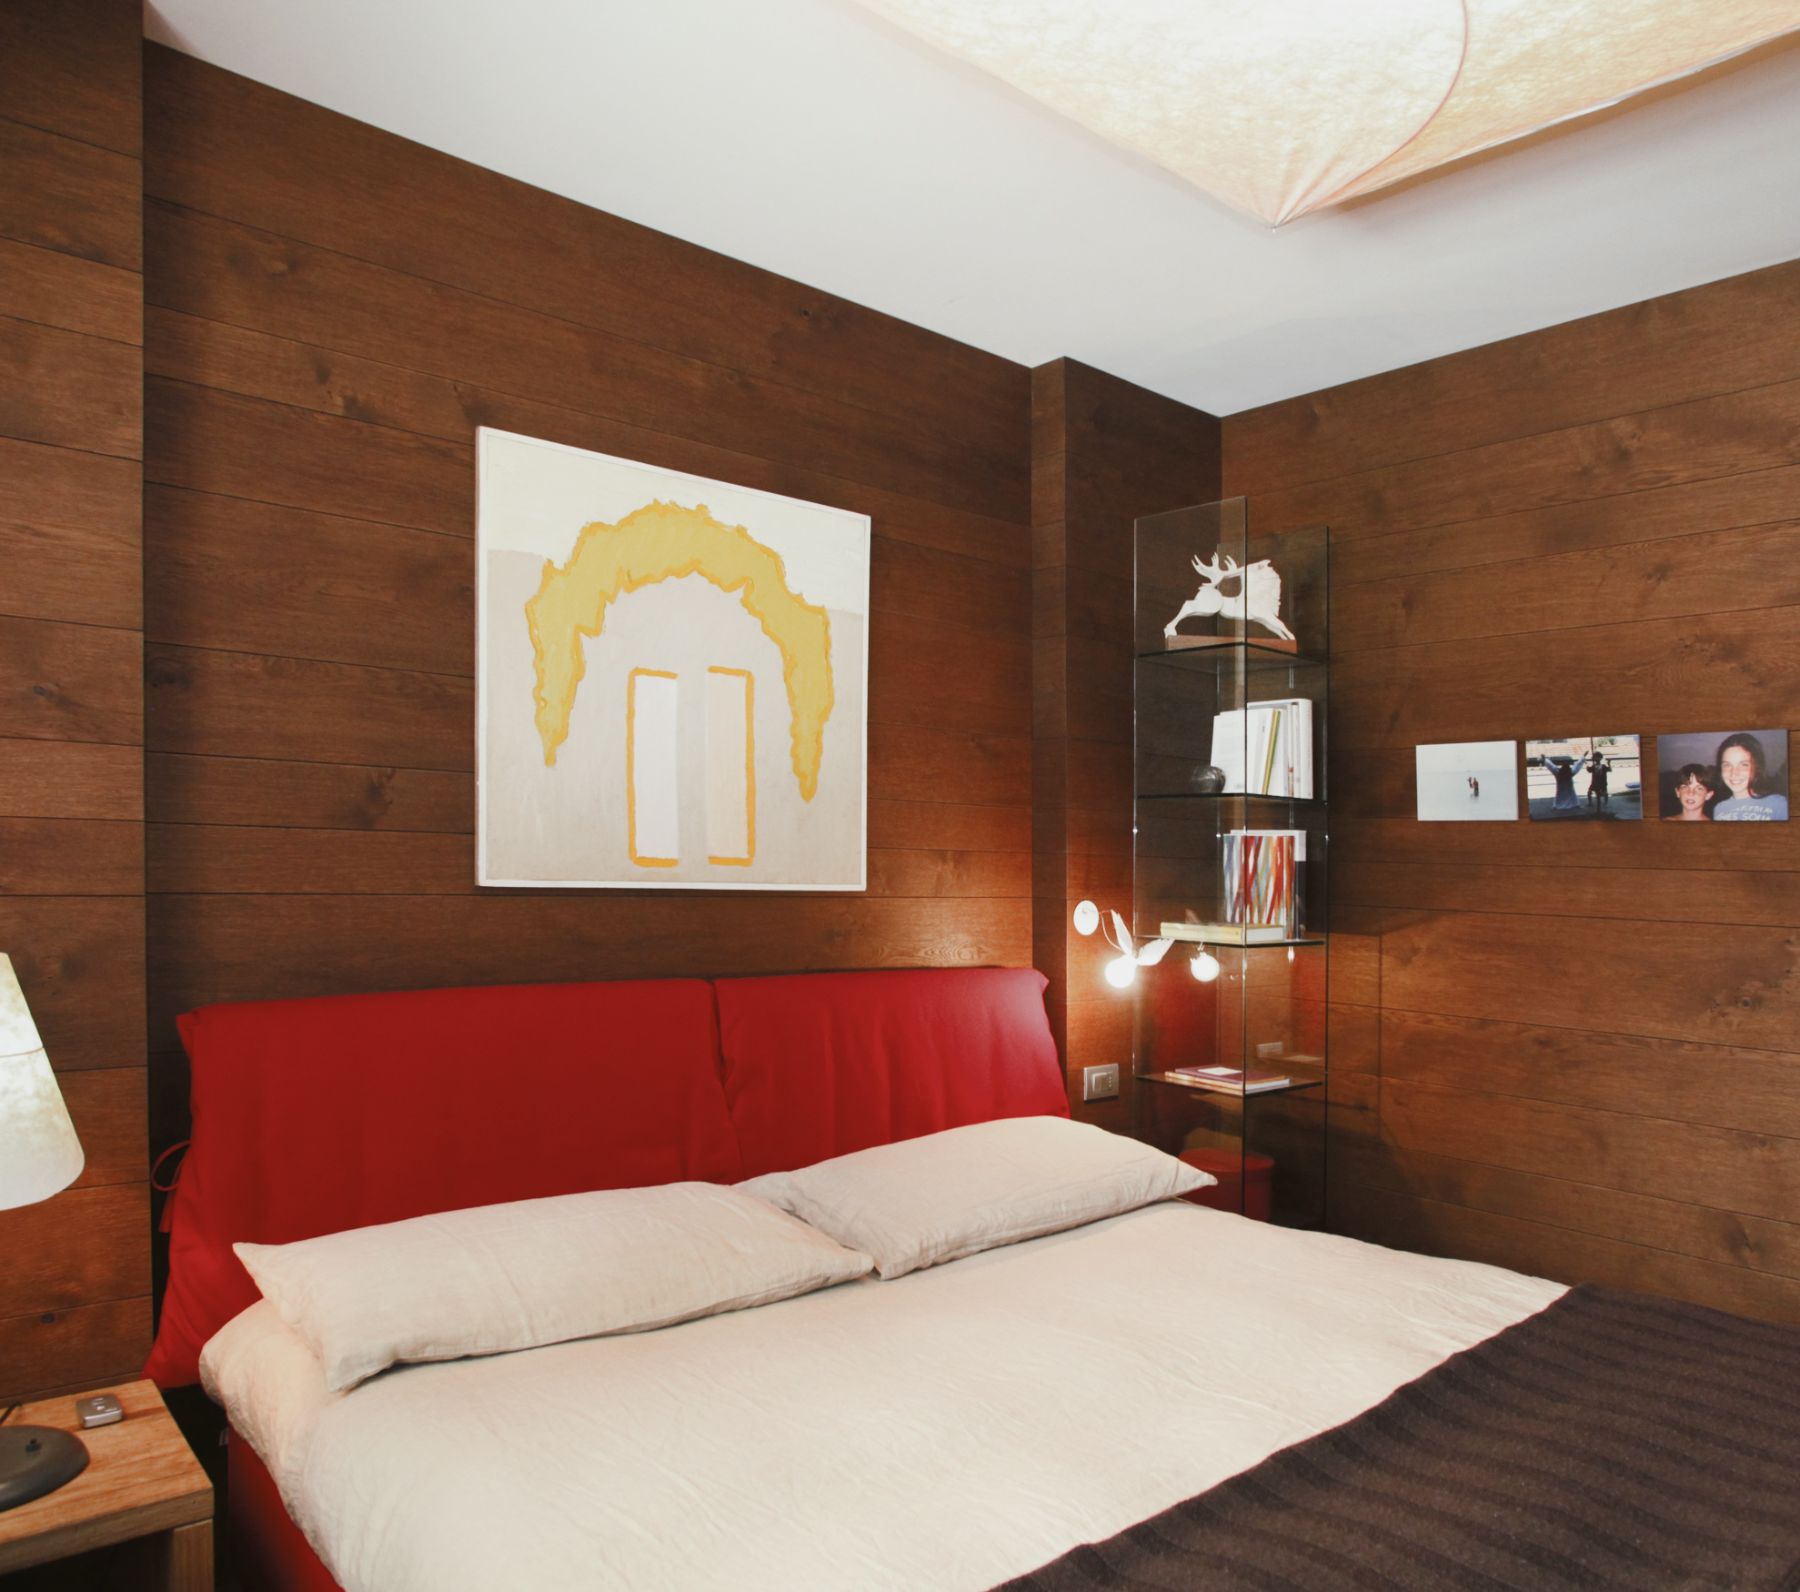 Appartamento in Valtellina, Ristrutturazione e progetto di interni, 70mq

Cliente privato, 2013